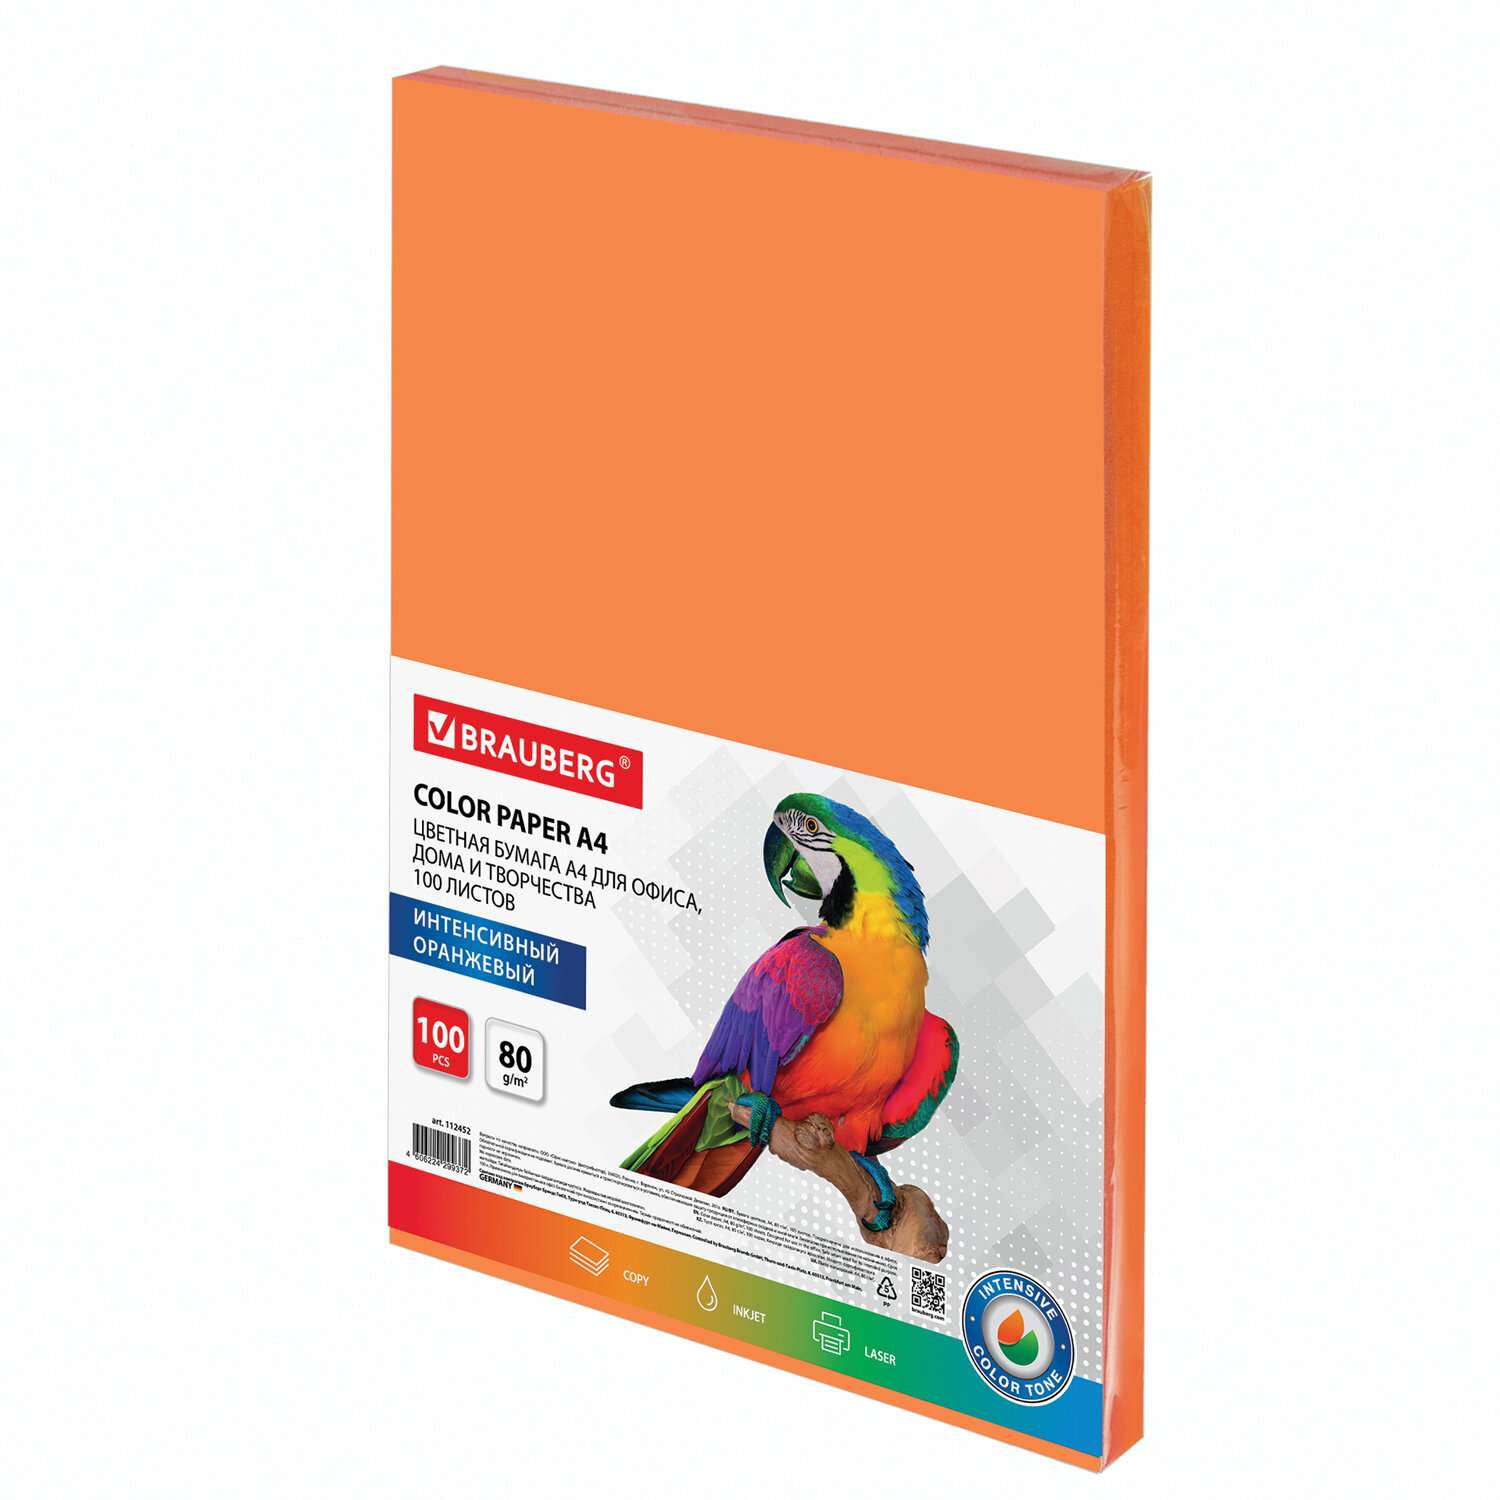 Цветная бумага Brauberg для принтера и школы А4 набор 100 листов оранжевая - фото 3